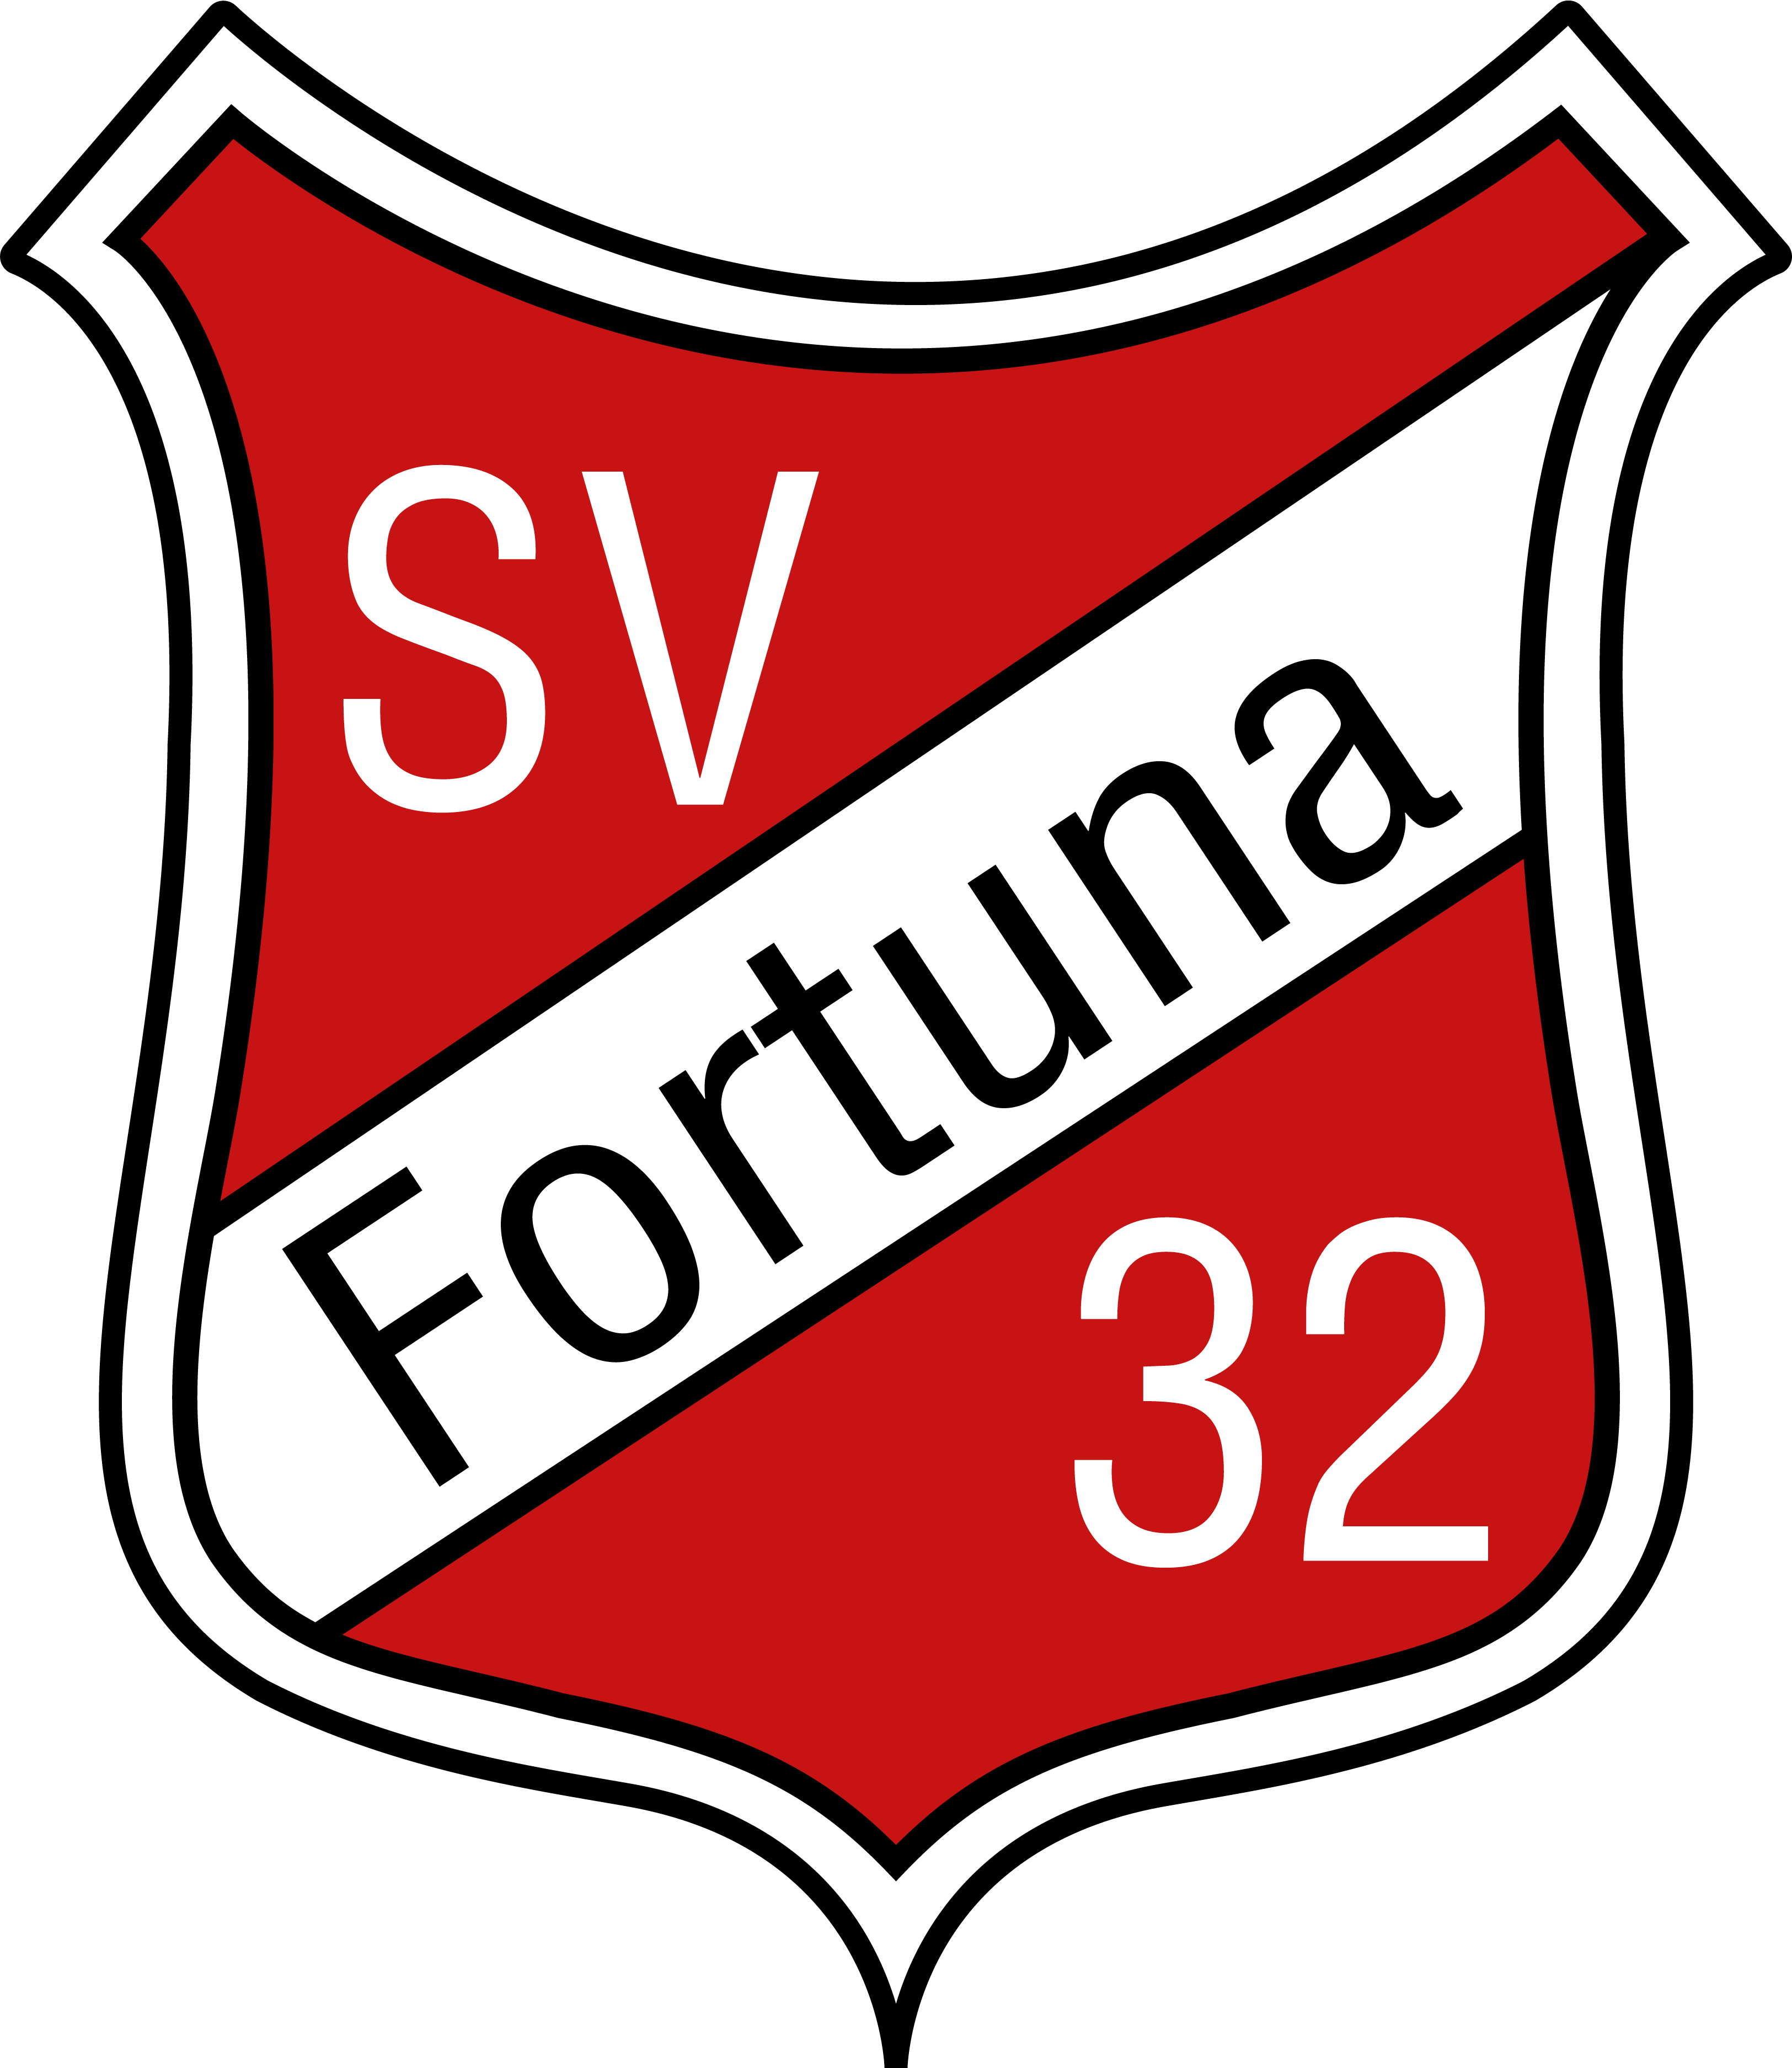 SV Fortuna